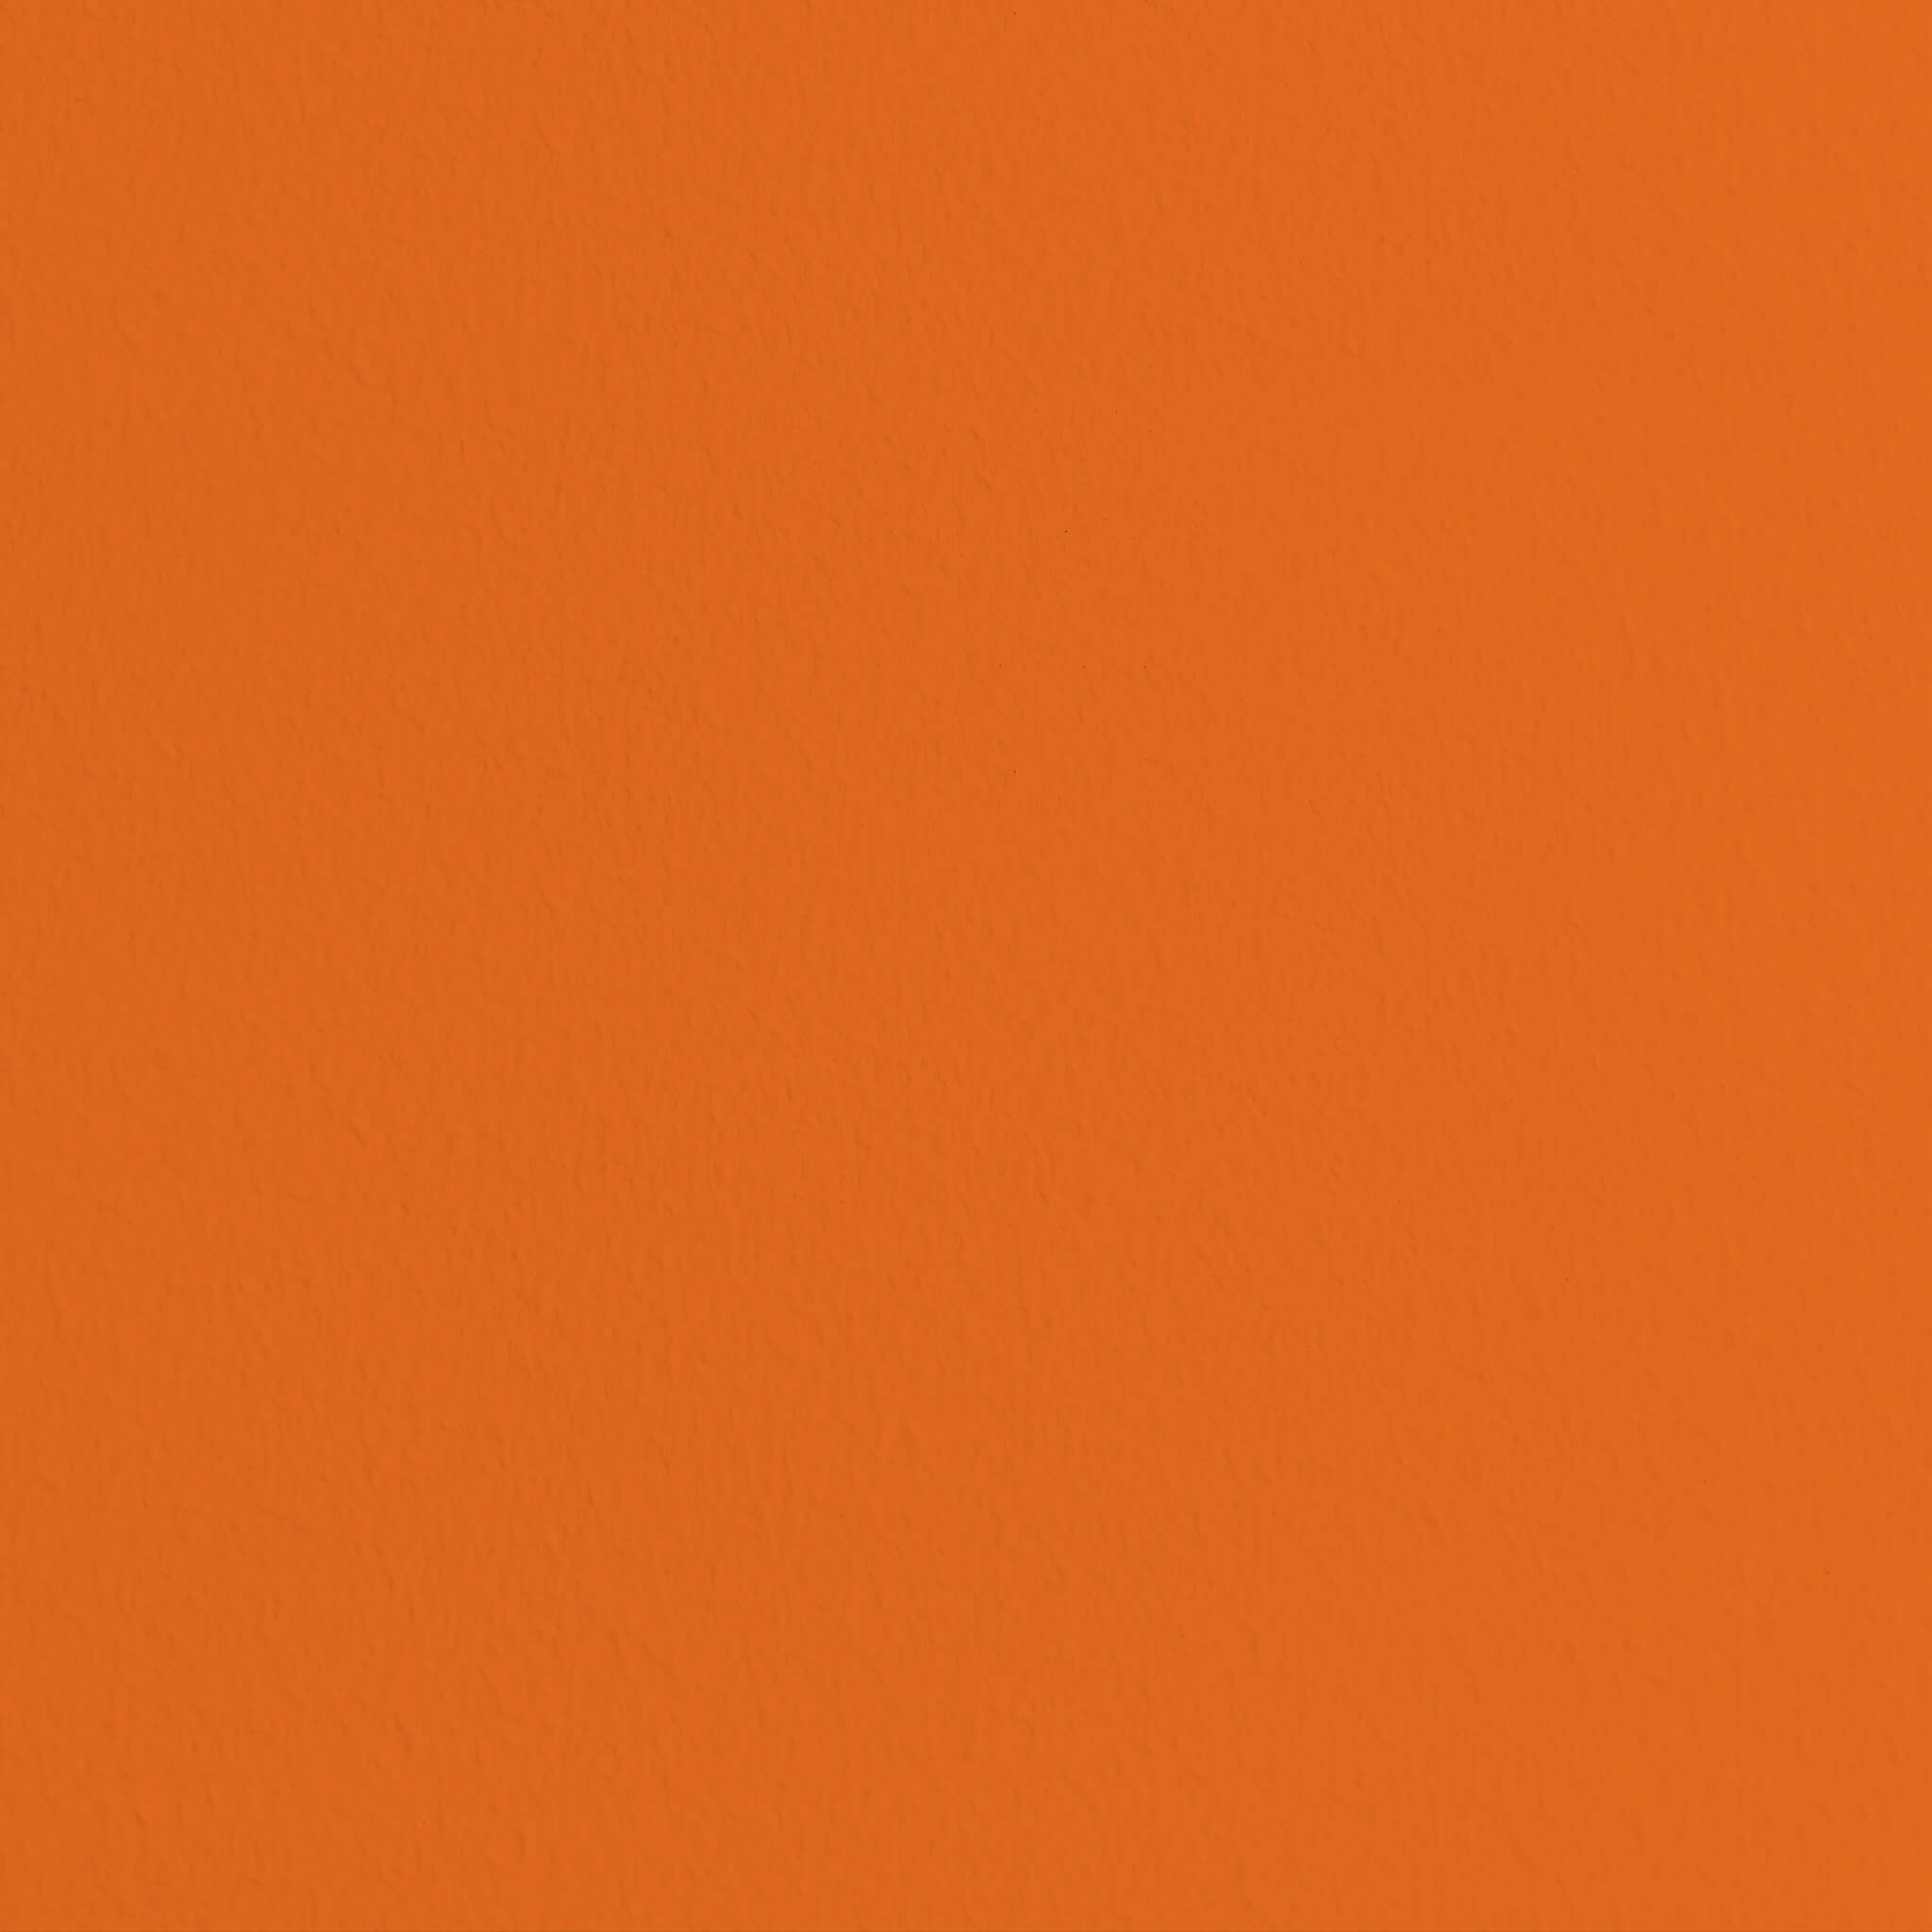 MissPompadour Orange mit Mandarine - Die Wertvolle 1L